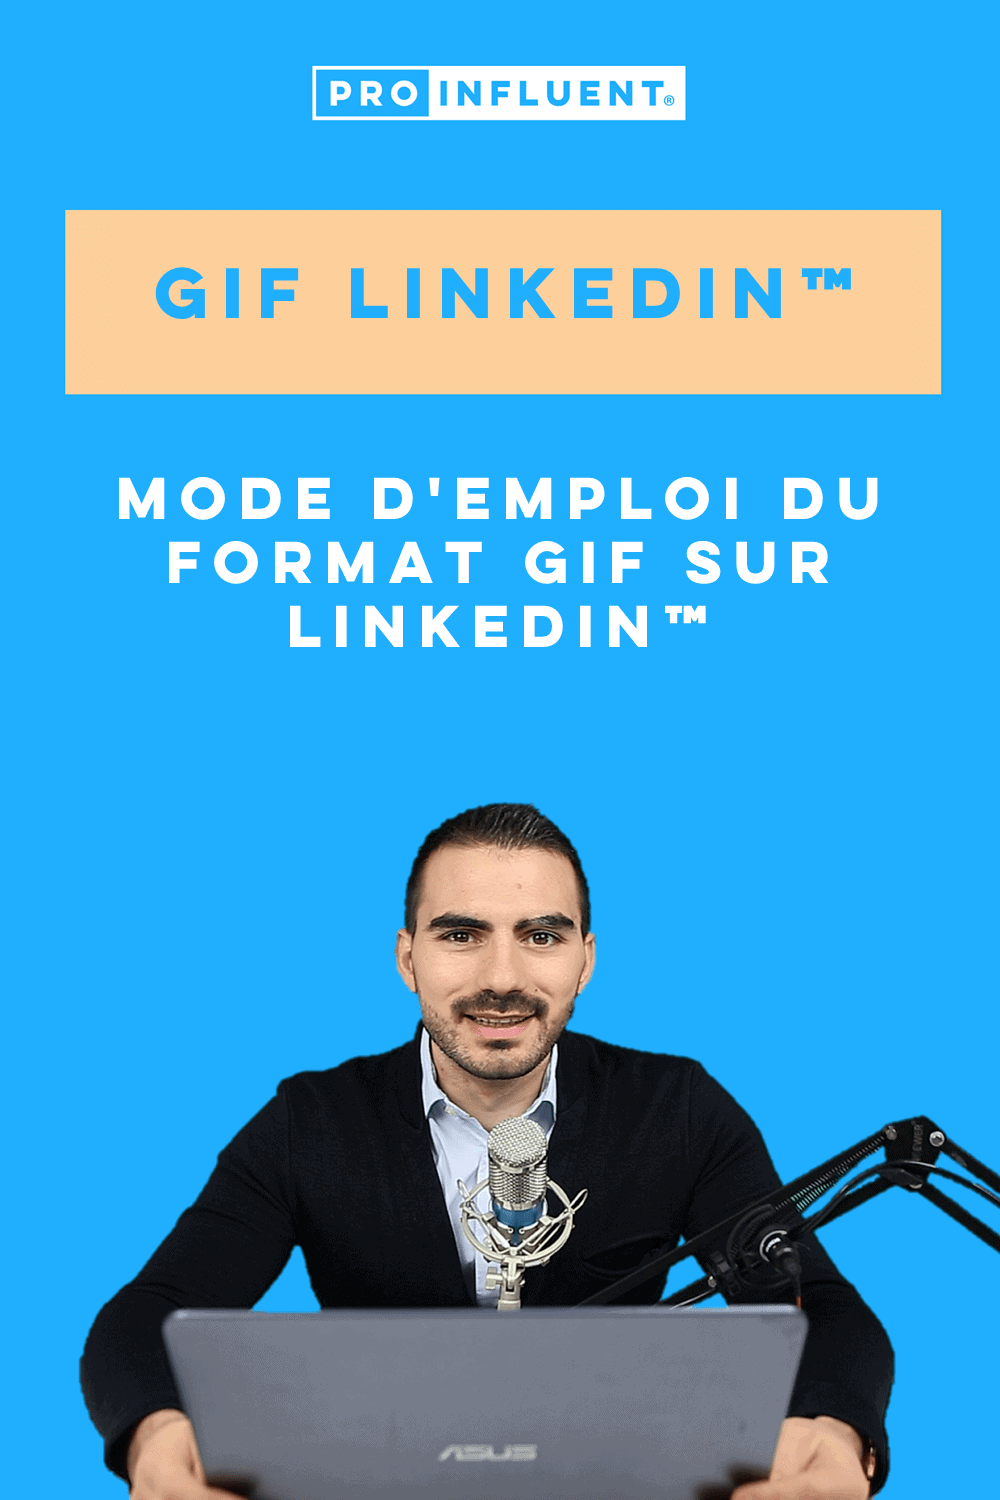 Gif LinkedIn™: cómo utilizar el formato GIF en LinkedIn™